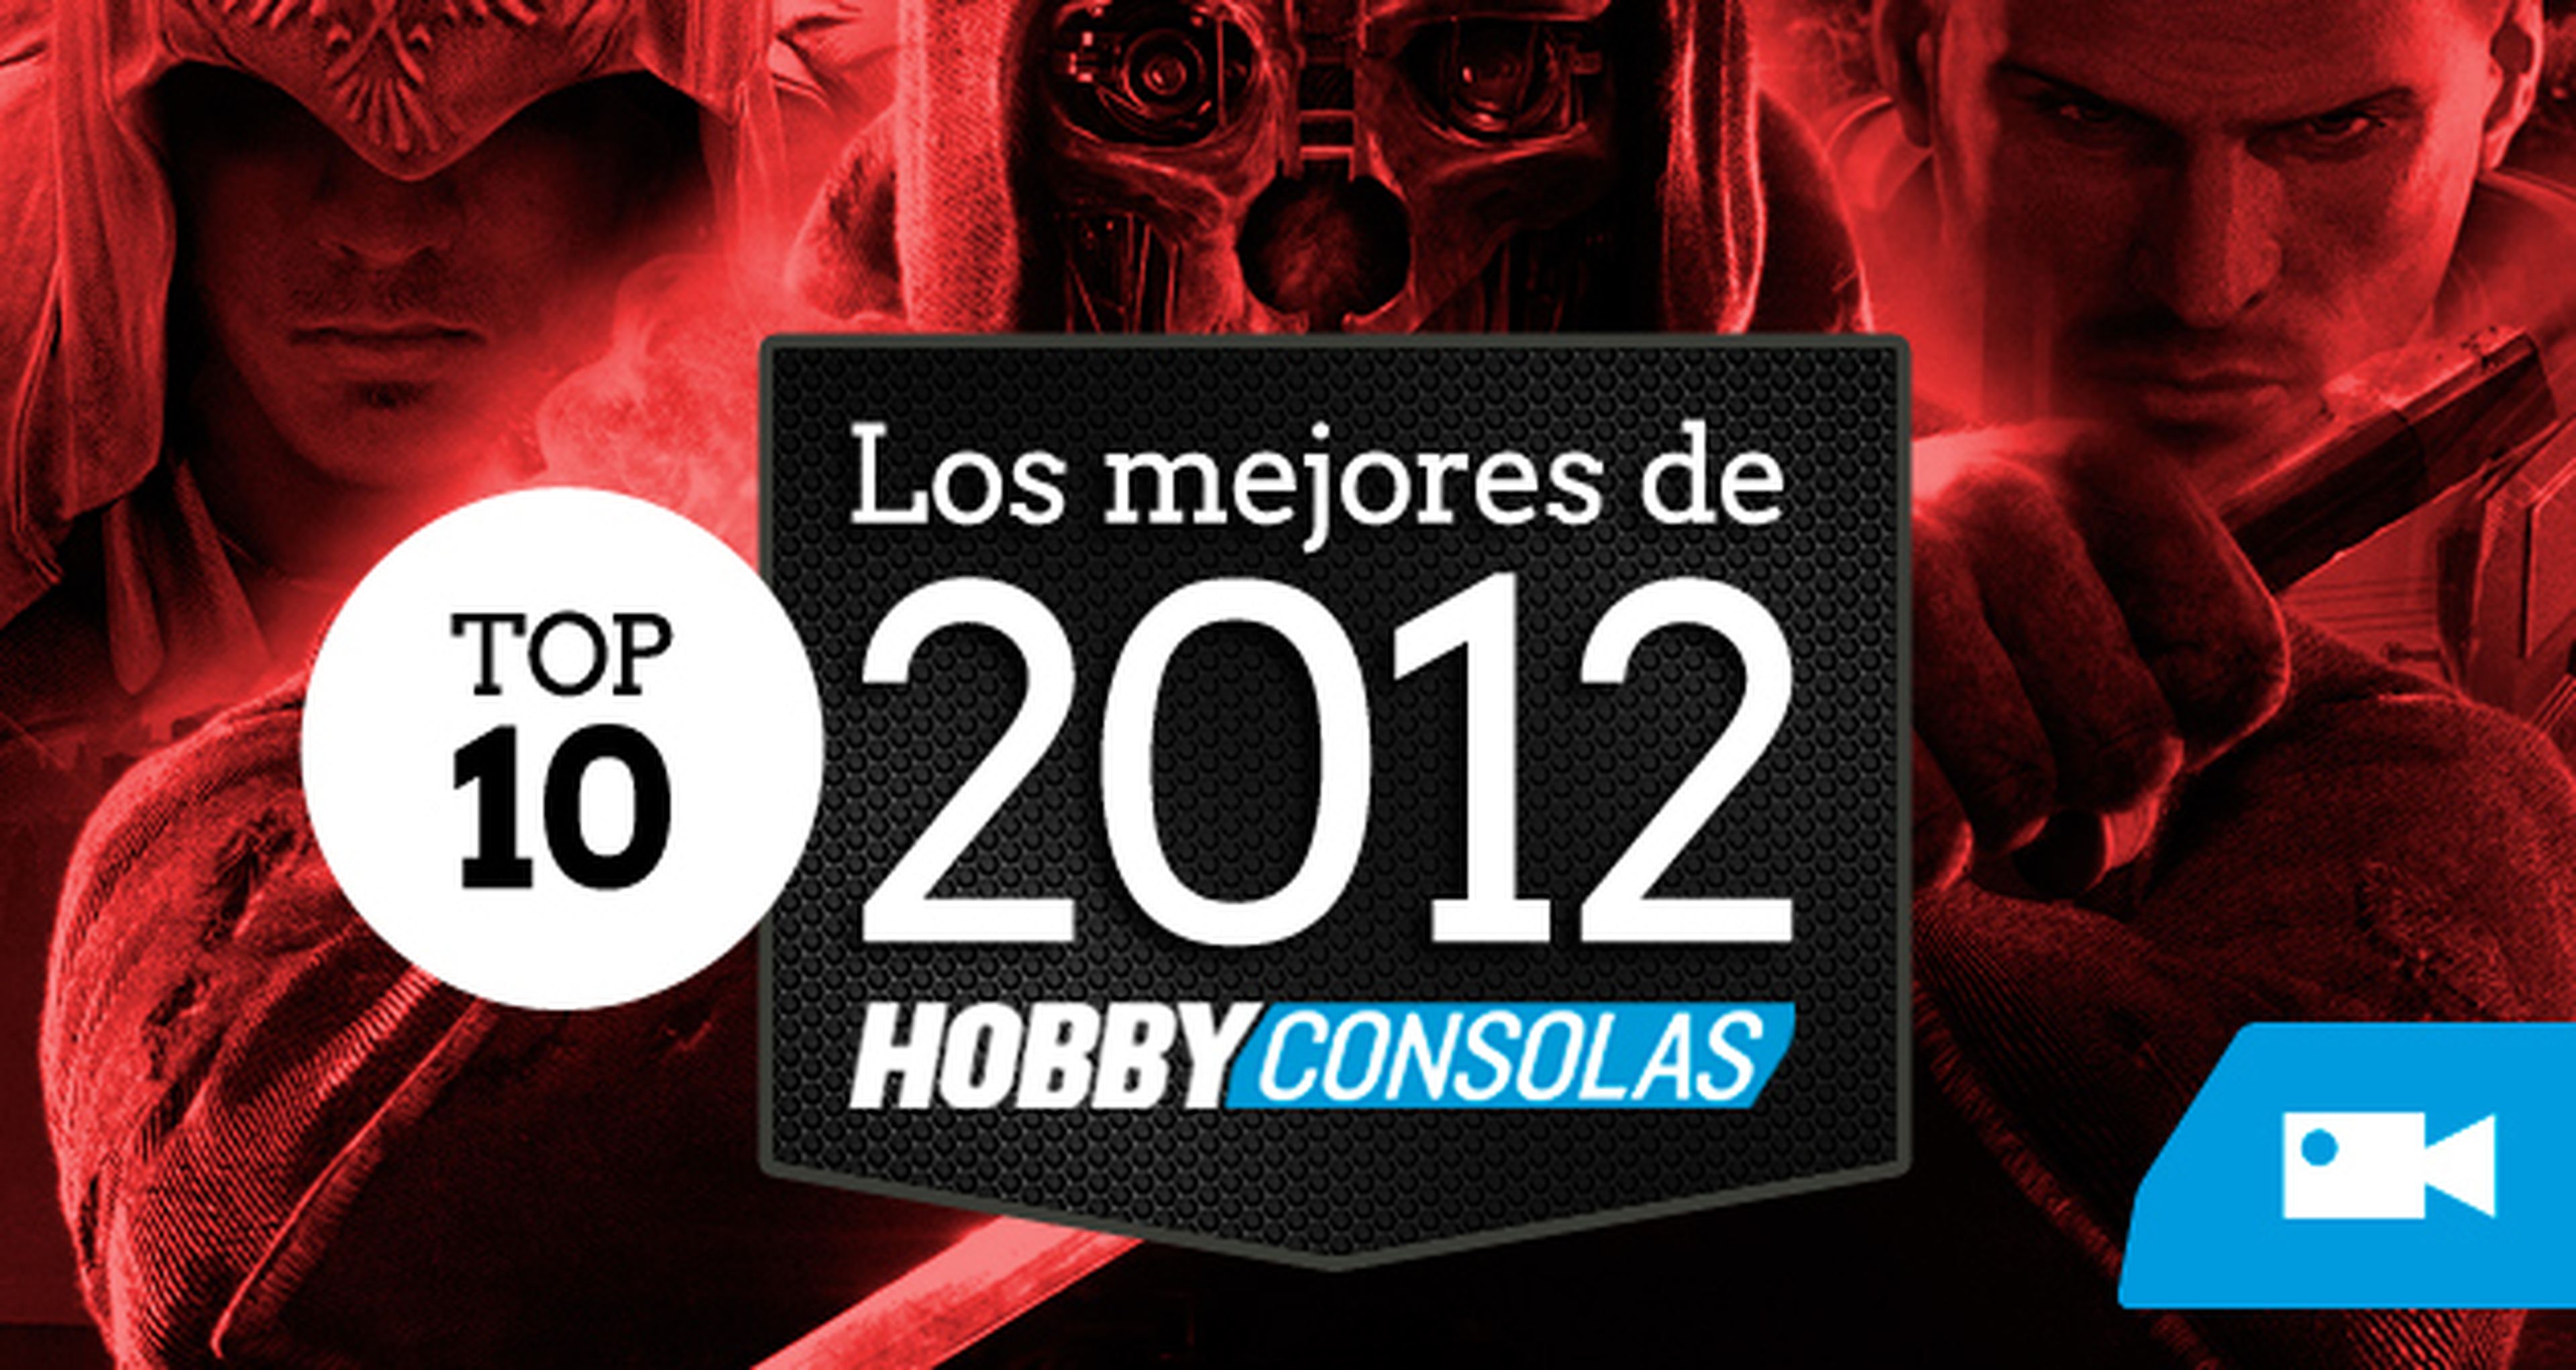 El Top 10 con los mejores juegos de 2012